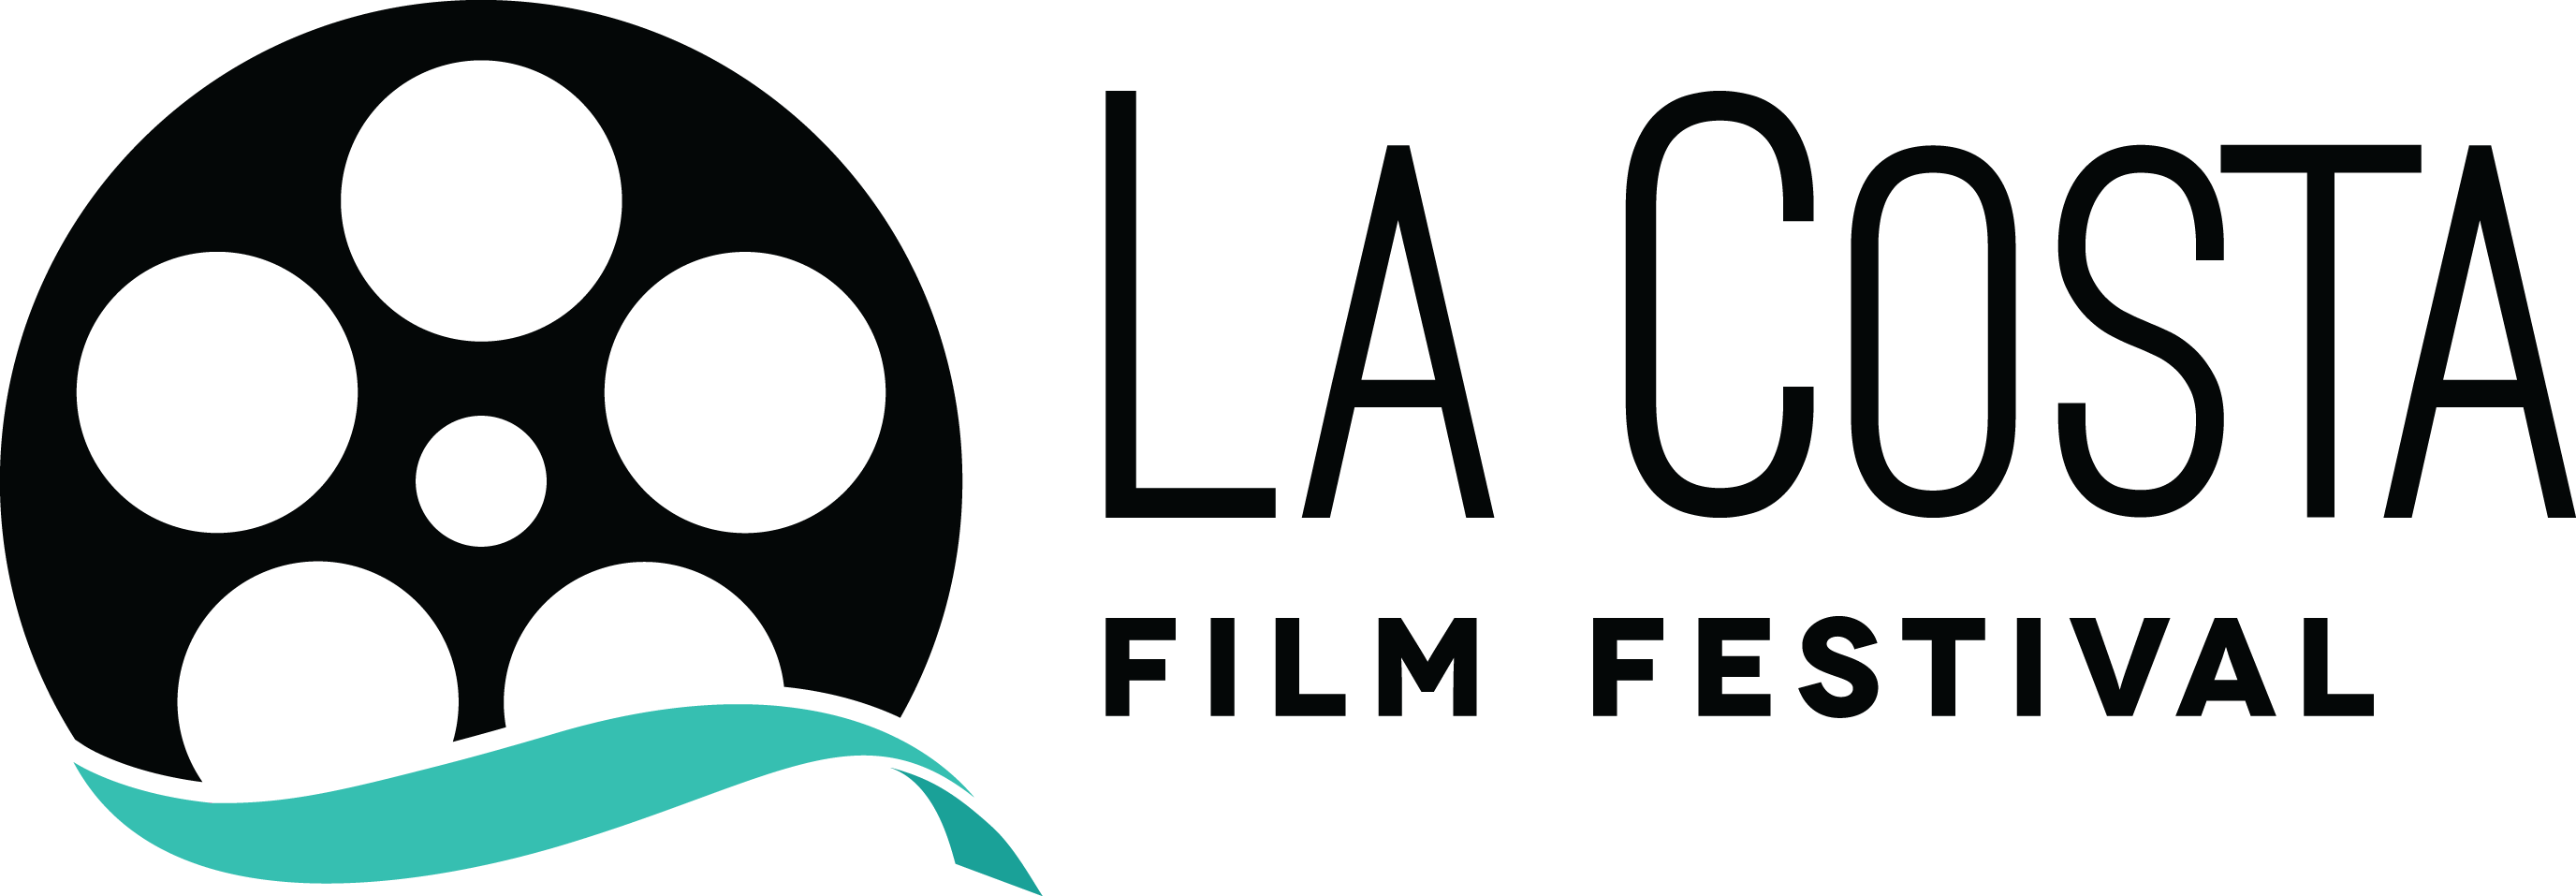 Ca La Costa Film Festival - La Costa Film Festival Logo (2752x957), Png Download